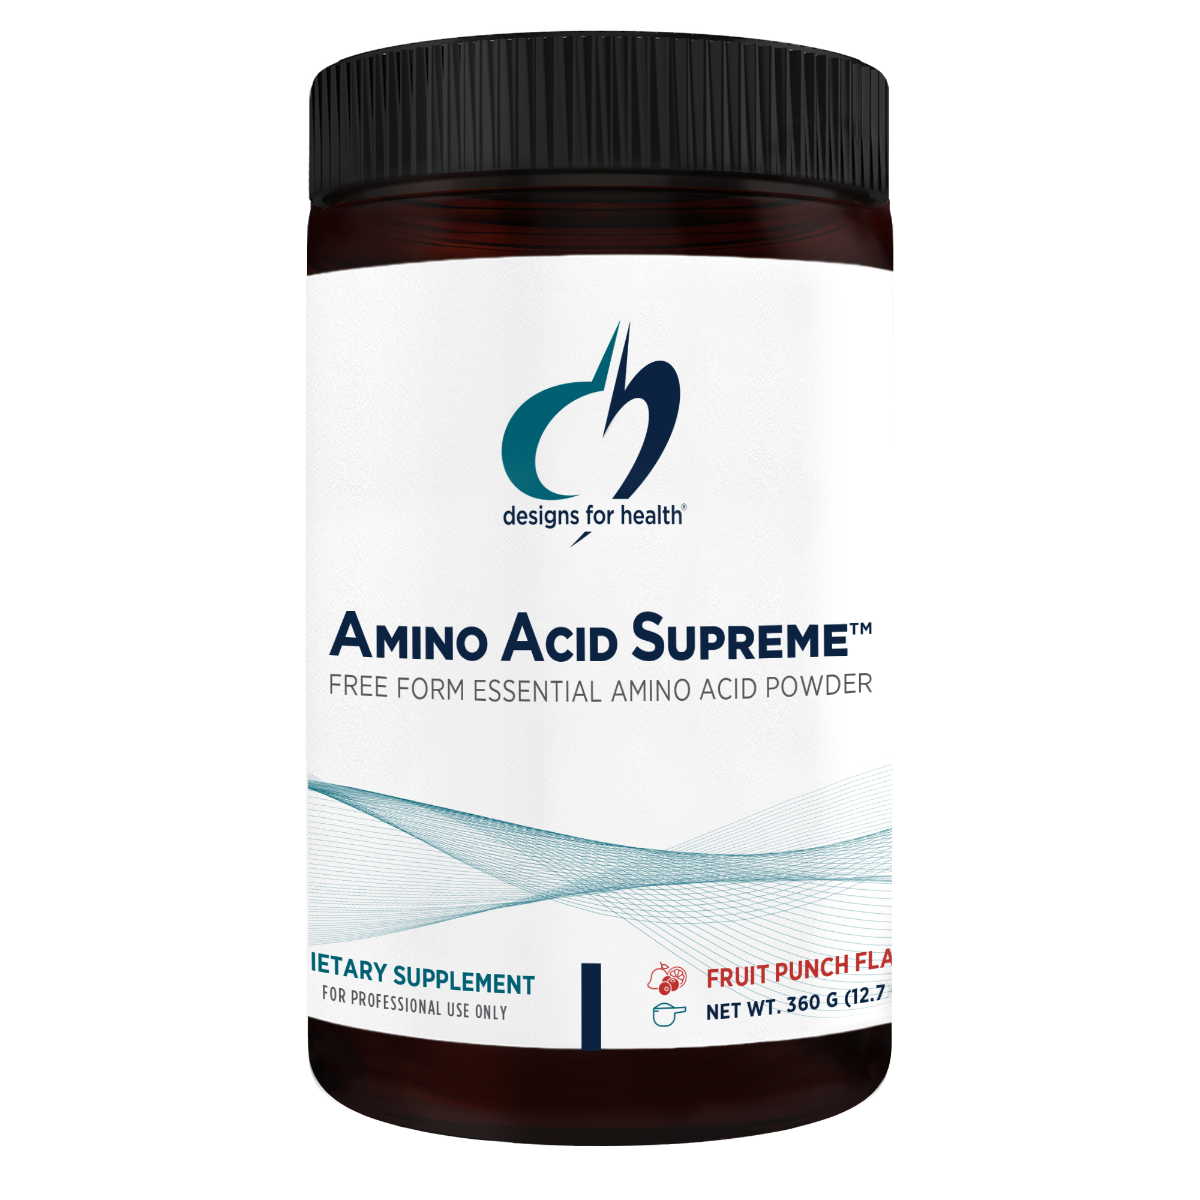 animo acid supreme-dfh-30